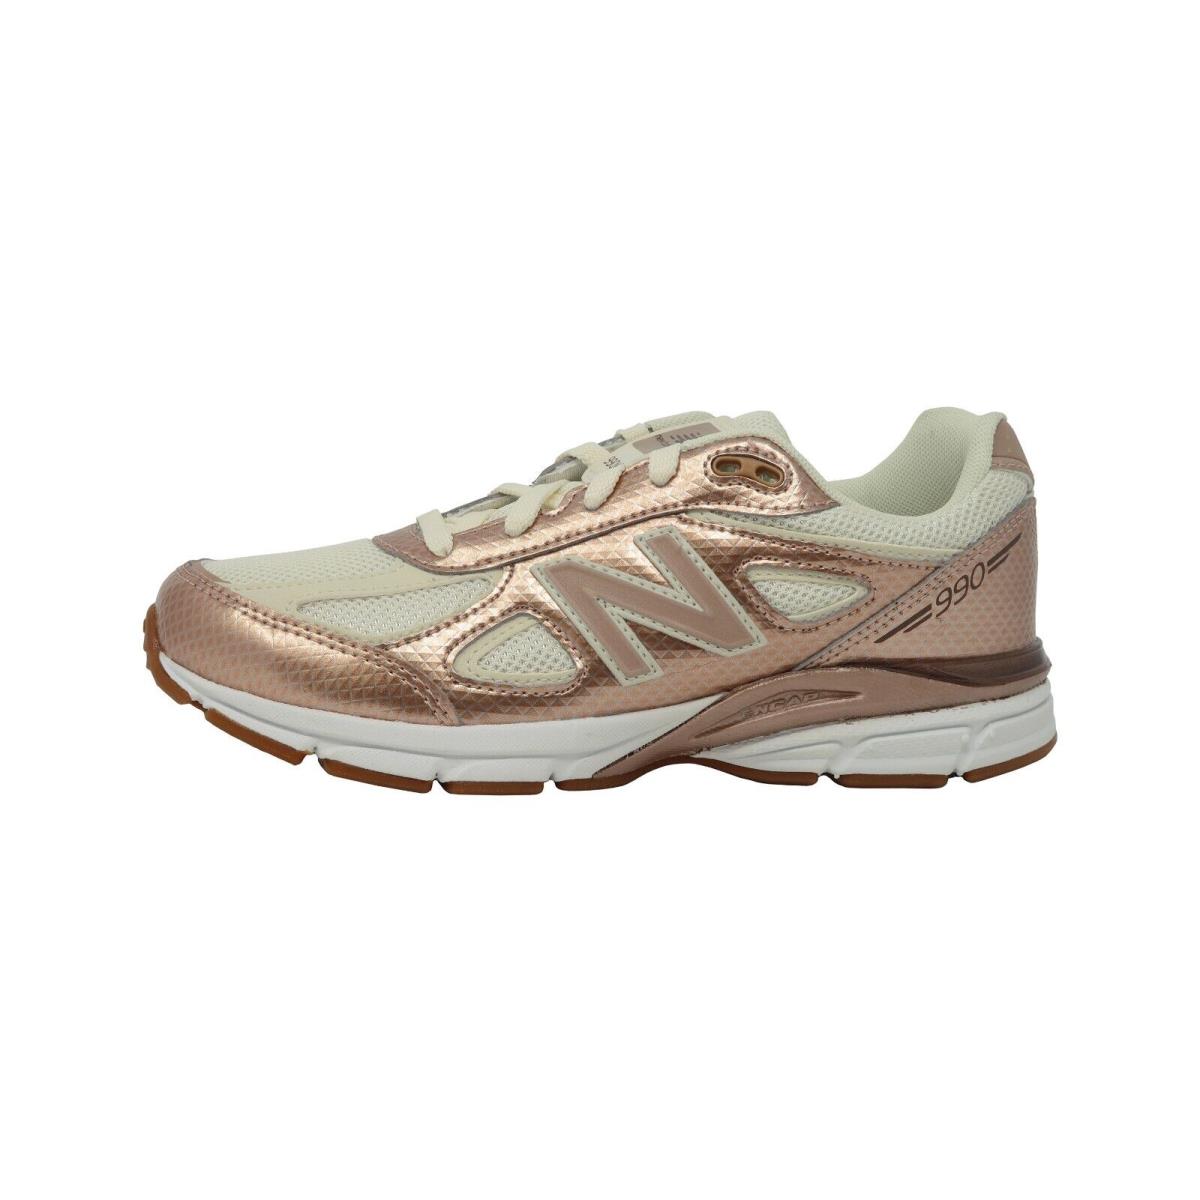 New Balance Big Kids Boy Girl 990 Running Shoes Sneakers KJ9902KG - Brown/beige - Brown